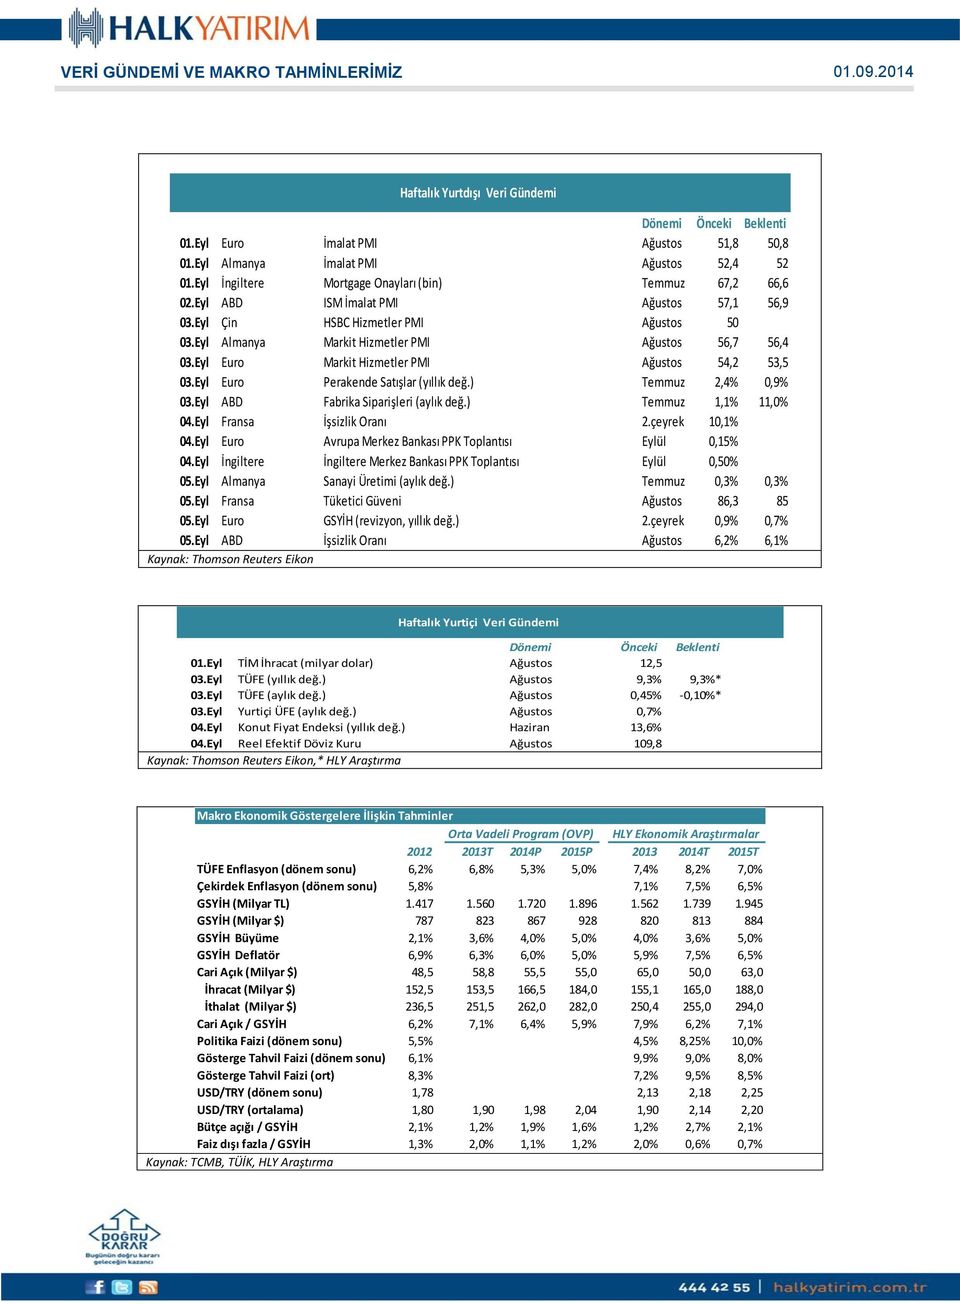 Eyl Euro Markit Hizmetler PMI Ağustos 54,2 53,5 03.Eyl Euro Perakende Satışlar (yıllık değ.) Temmuz 2,4% 0,9% 03.Eyl ABD Fabrika Siparişleri (aylık değ.) Temmuz 1,1% 11,0% 04.